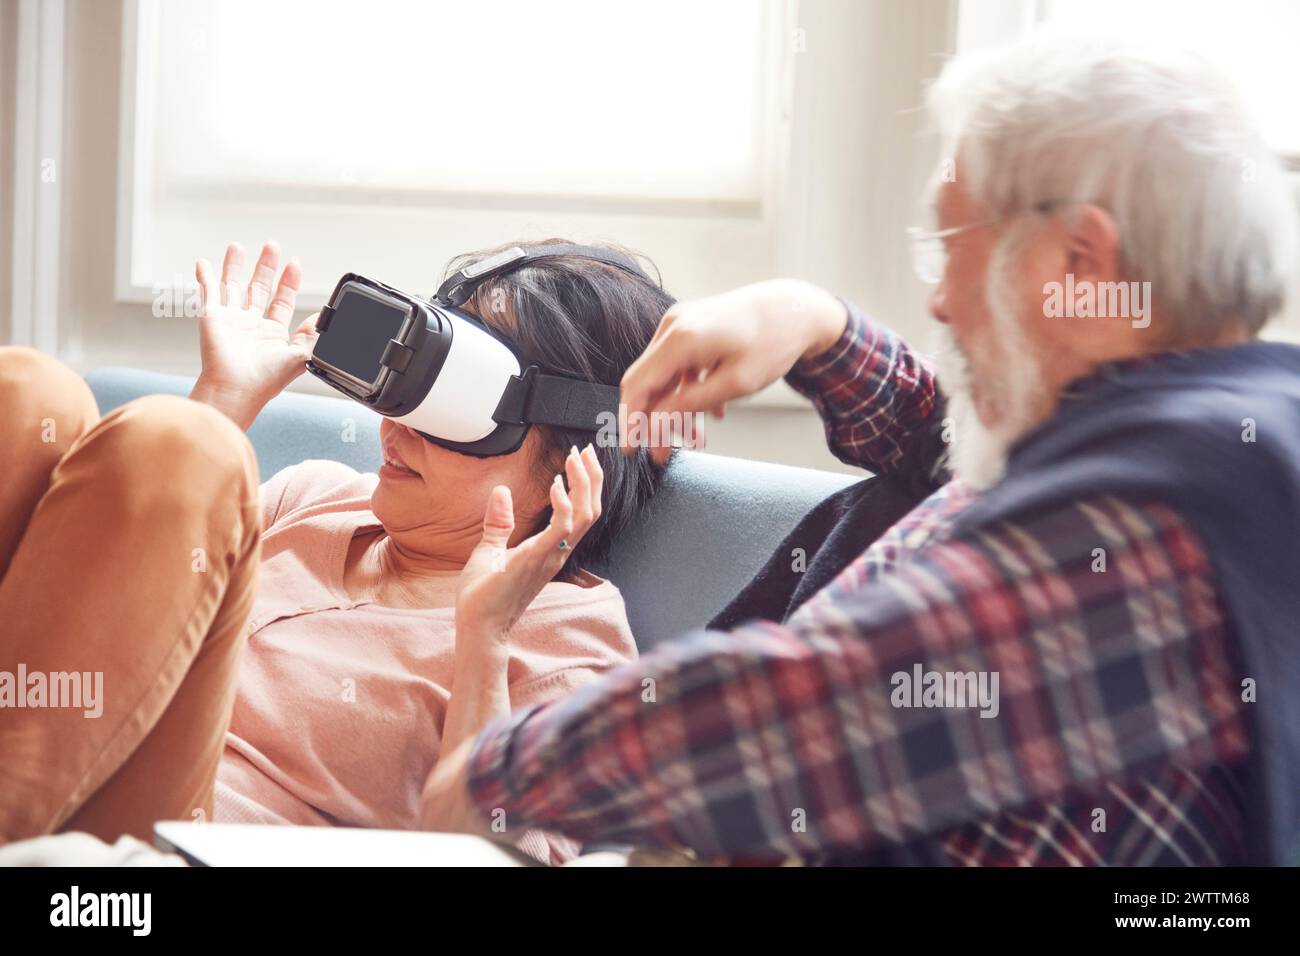 Frau mit VR-Headset und Mann neben ihr Stockfoto